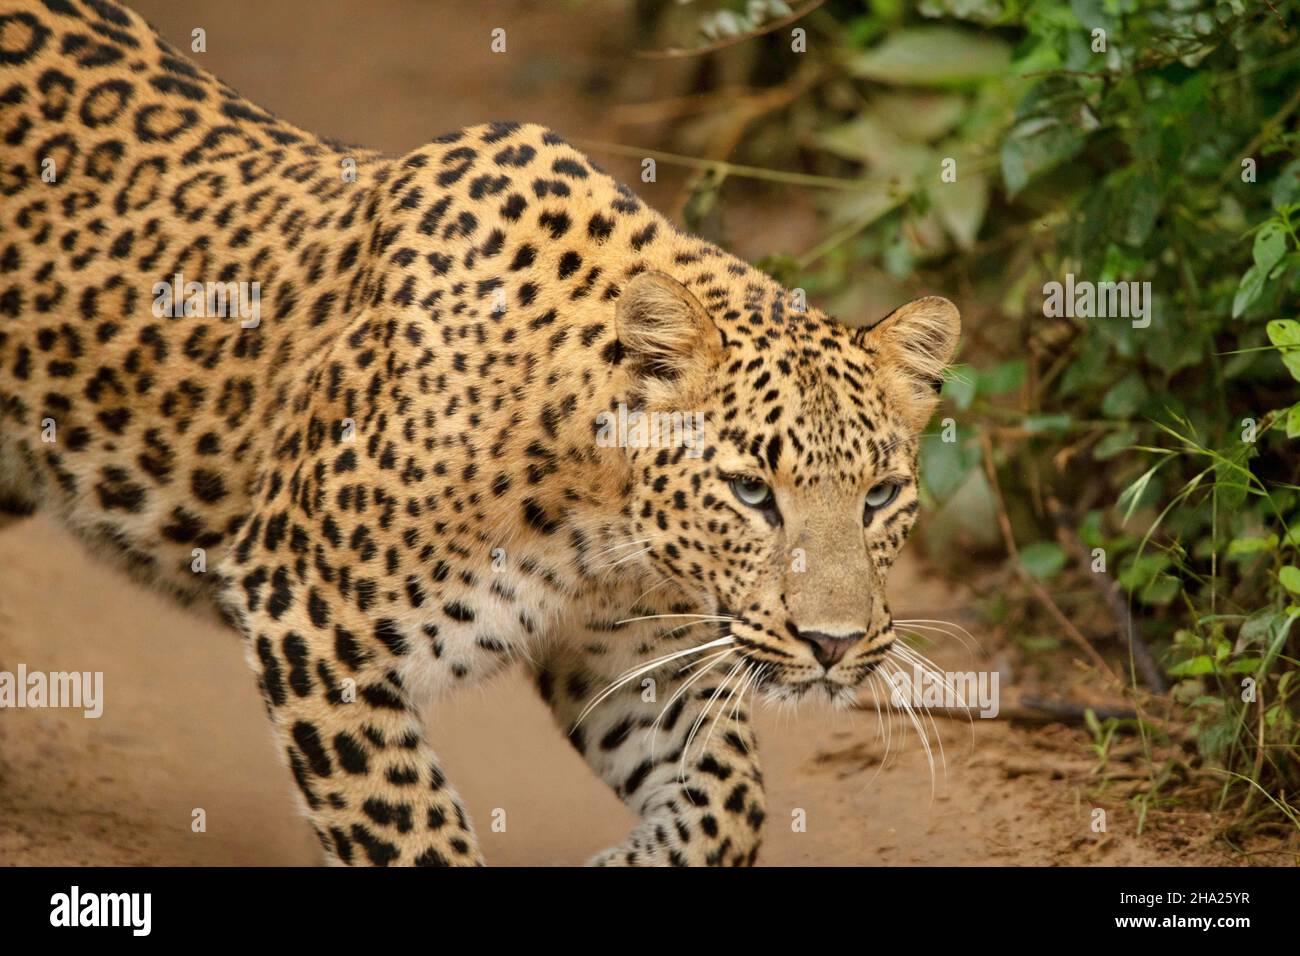 Photo de gros plan du léopard indien, Panthera pardus fusca, Jhalana, Rajasthan, Inde Banque D'Images